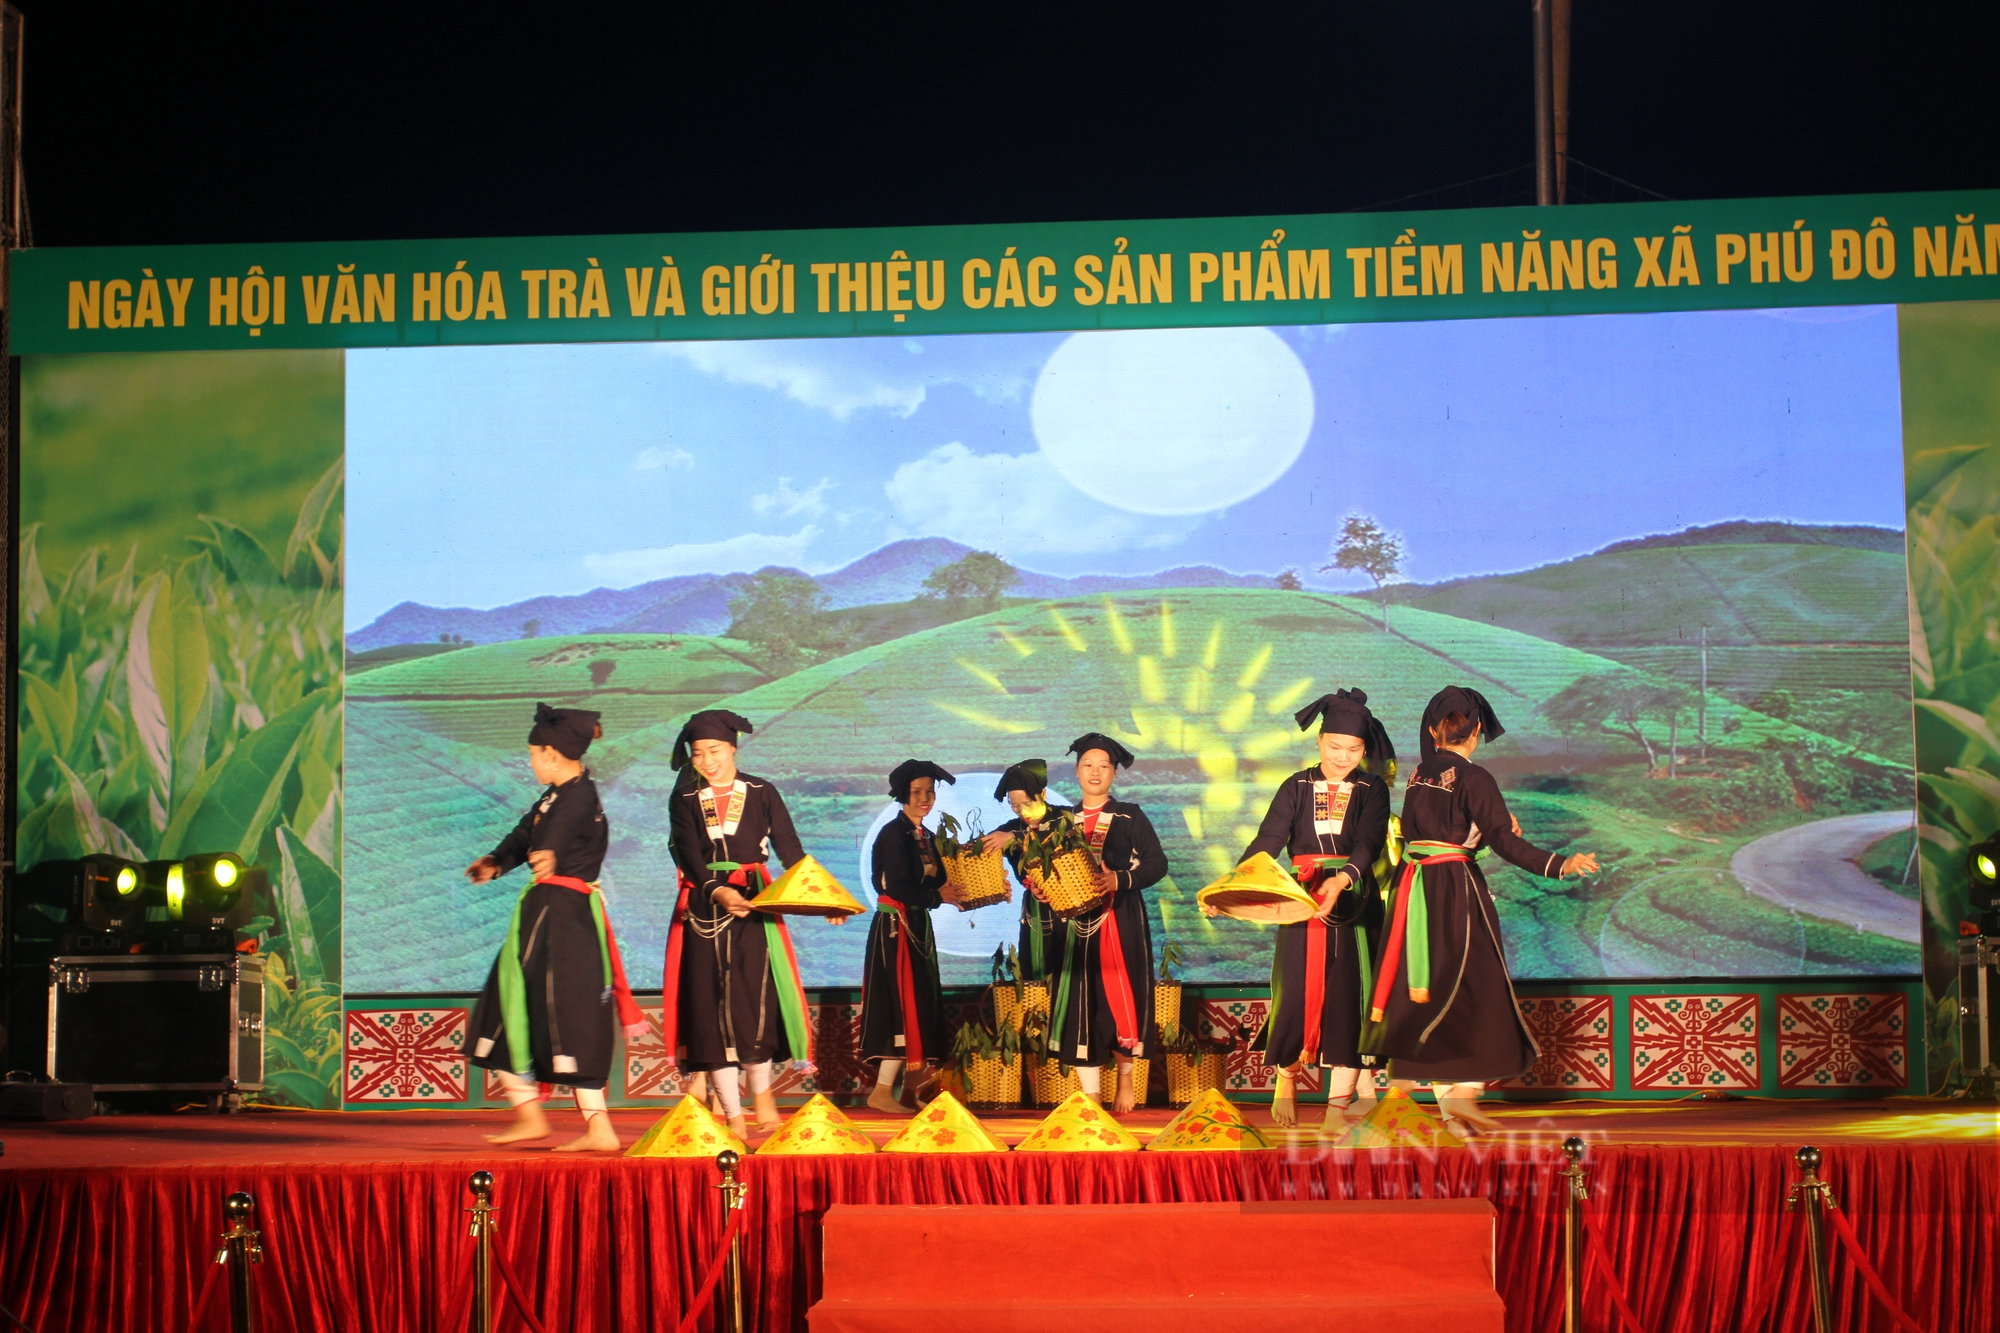 Thái Nguyên: Tưng bừng ngày Hội văn hóa trà và giới thiệu các sản phẩm tiềm năng thế mạnh năm 2022 - Ảnh 2.